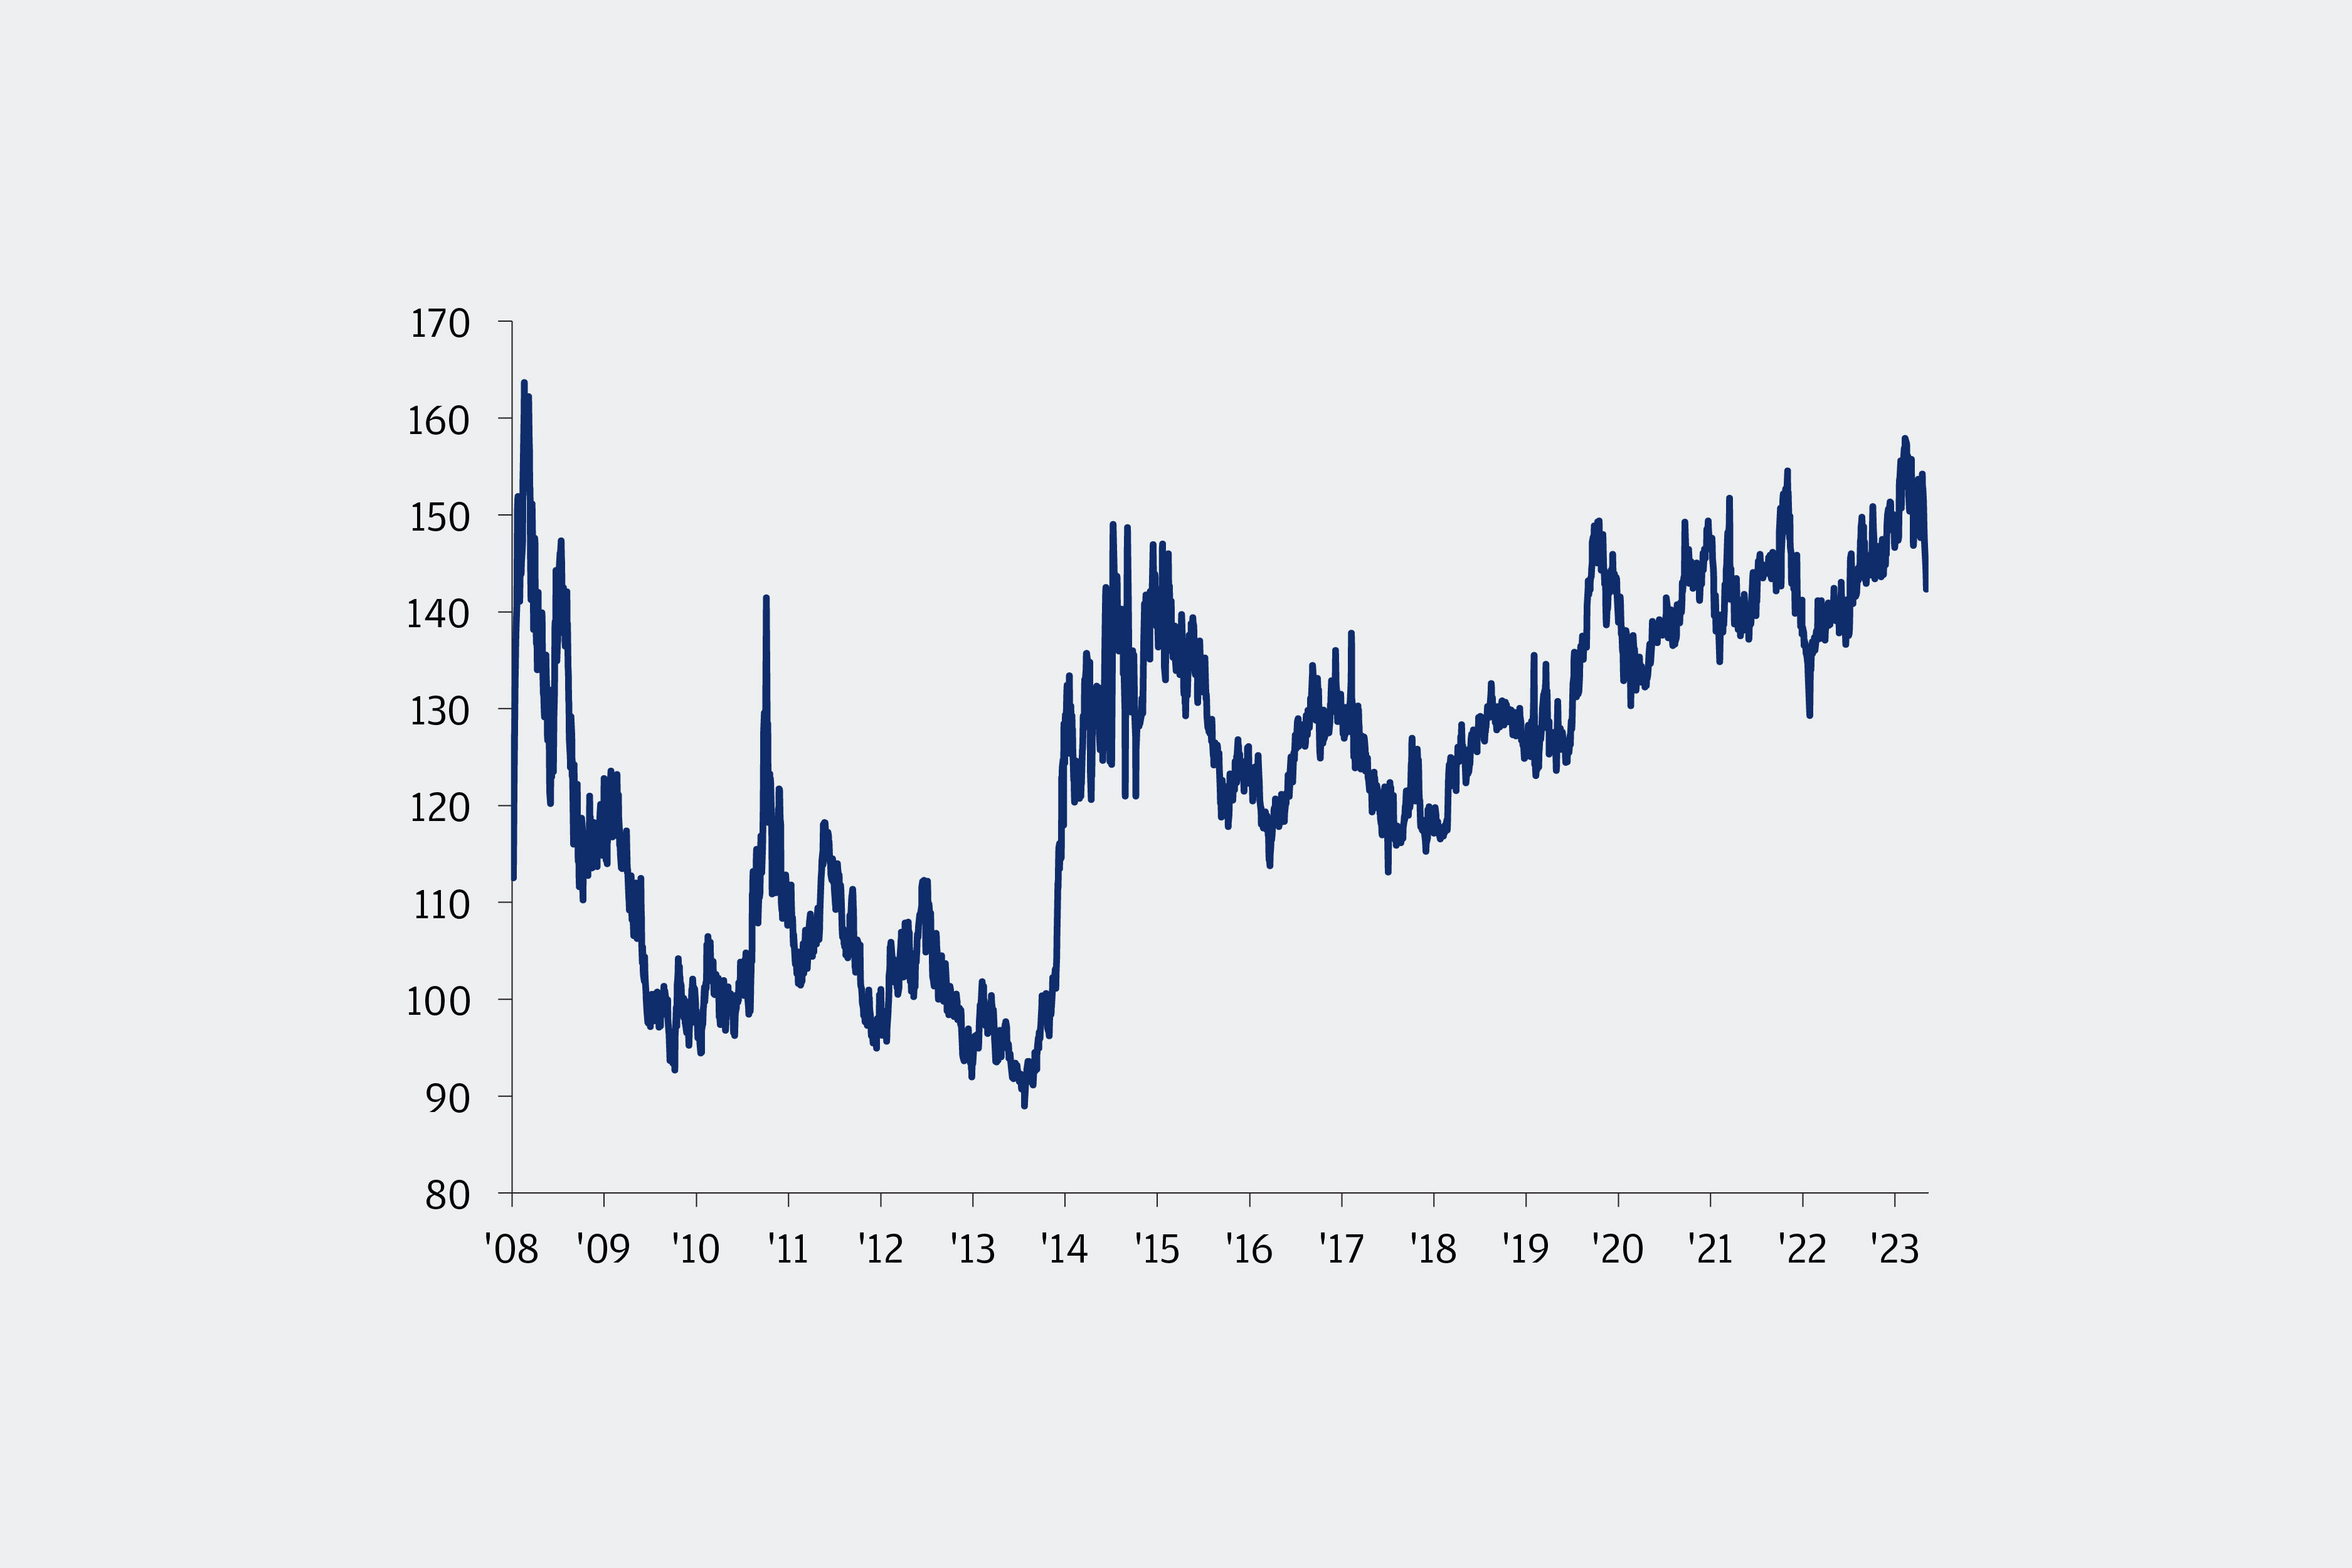 O gráfico de linhas mostra o índice Hang Seng Stock Connect China A-H Premium, que acompanha a avaliação relativa das ações A da China em relação às ações H, de 2008 a maio de 2024. Um valor mais alto do índice indica que as ações A estão sendo negociadas com um prêmio maior em relação às ações H, enquanto um valor mais baixo do índice indica que as ações A estão sendo negociadas com um prêmio menor em relação às ações H. O índice A-H Premium estava em 112 em janeiro de 2009, mas disparou para um recorde de 163 em fevereiro de 2009 com o início da crise financeira. Em seguida, caiu de 163 em fevereiro de 2009 para 92 em outubro de 2010, mas voltou a subir para 141 em outubro de 2011. De outubro de 2011 a julho de 2014, o índice China A-H Premium viu um aumento acentuado de 89, em julho de 2014, para 147 em janeiro de 2016. Depois, caiu para 113 em março de 2017, mas voltou a subir para 137 em fevereiro de 2018. De fevereiro de 2018 a julho de 2018, o índice A-H Premium caiu de 137 para 113. A tendência se reverteu em agosto de 2018, com o índice A-H Premium subindo constantemente de 116 em agosto de 2018 para 142 em maio de 2024, com as ações onshore alcançando alguns dos seus maiores prêmios em relação às offshore desde a crise financeira.